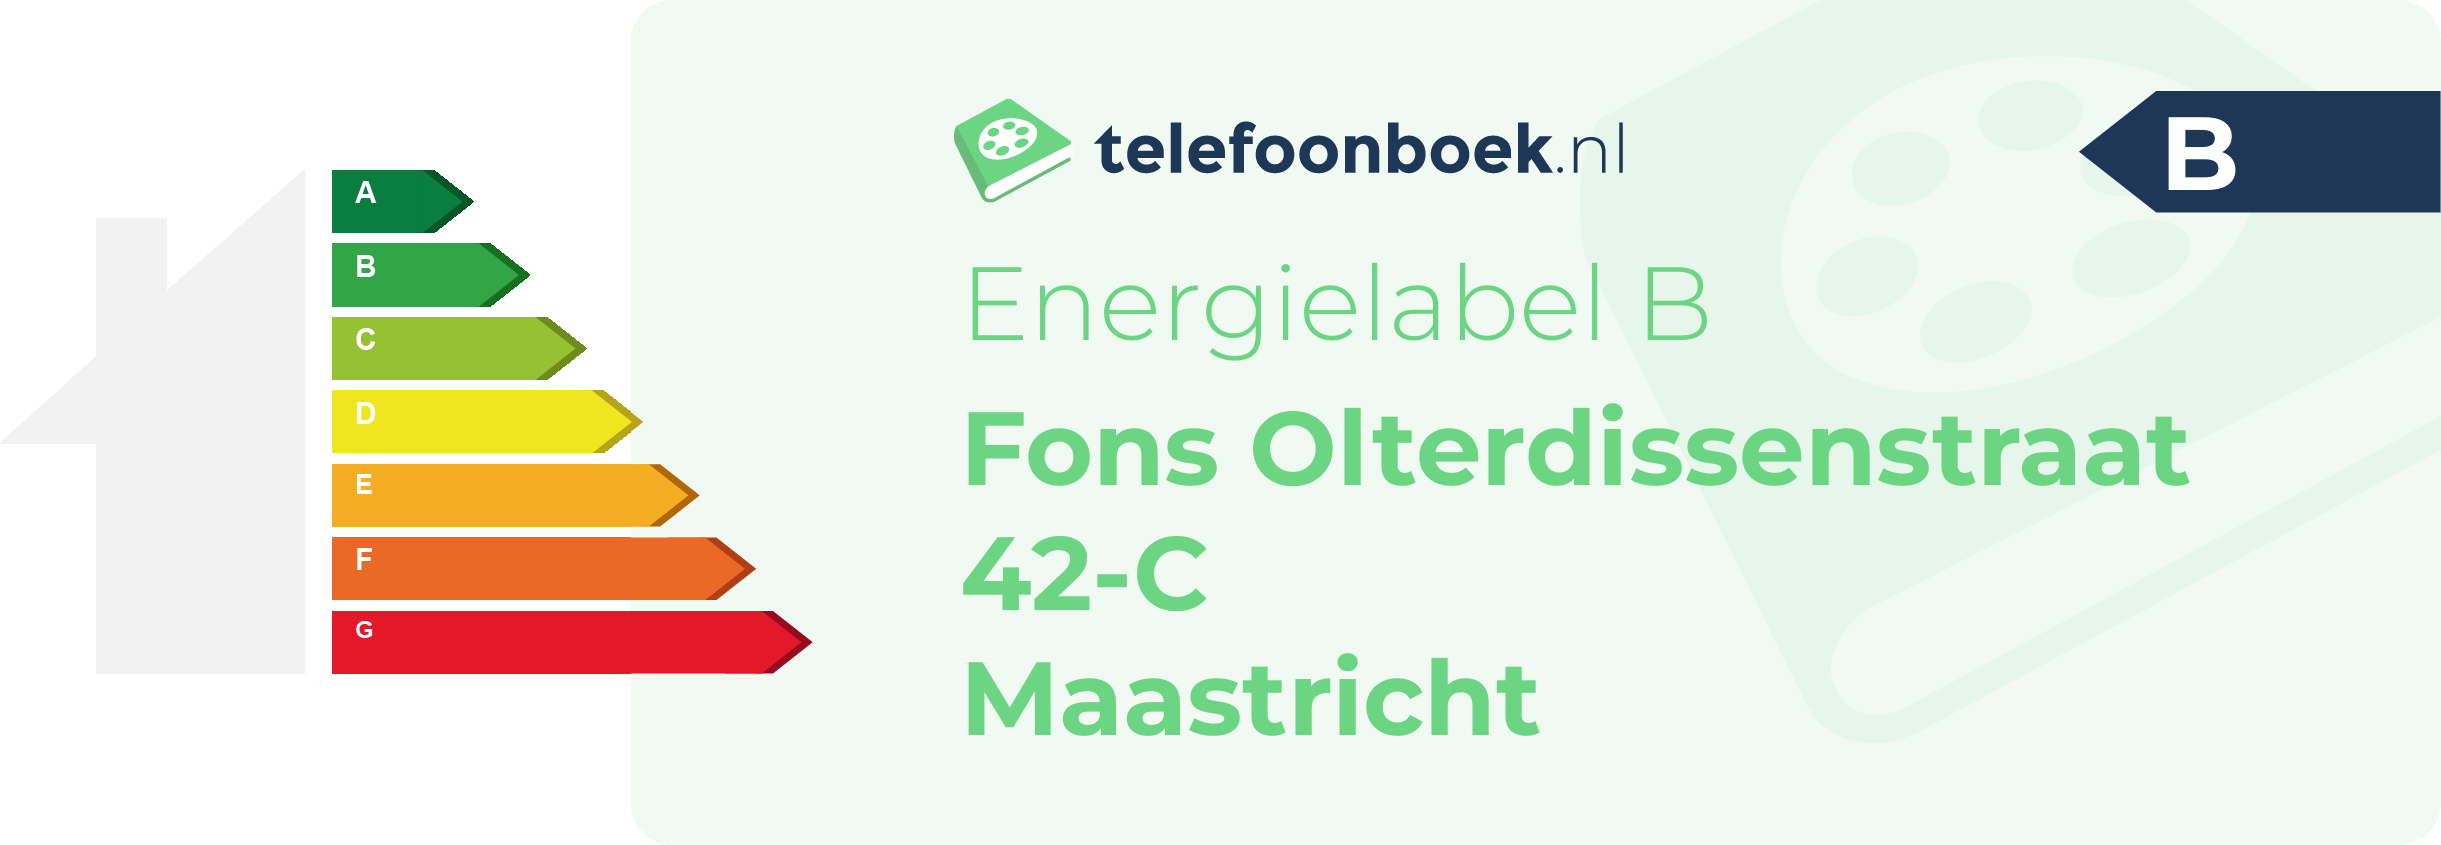 Energielabel Fons Olterdissenstraat 42-C Maastricht